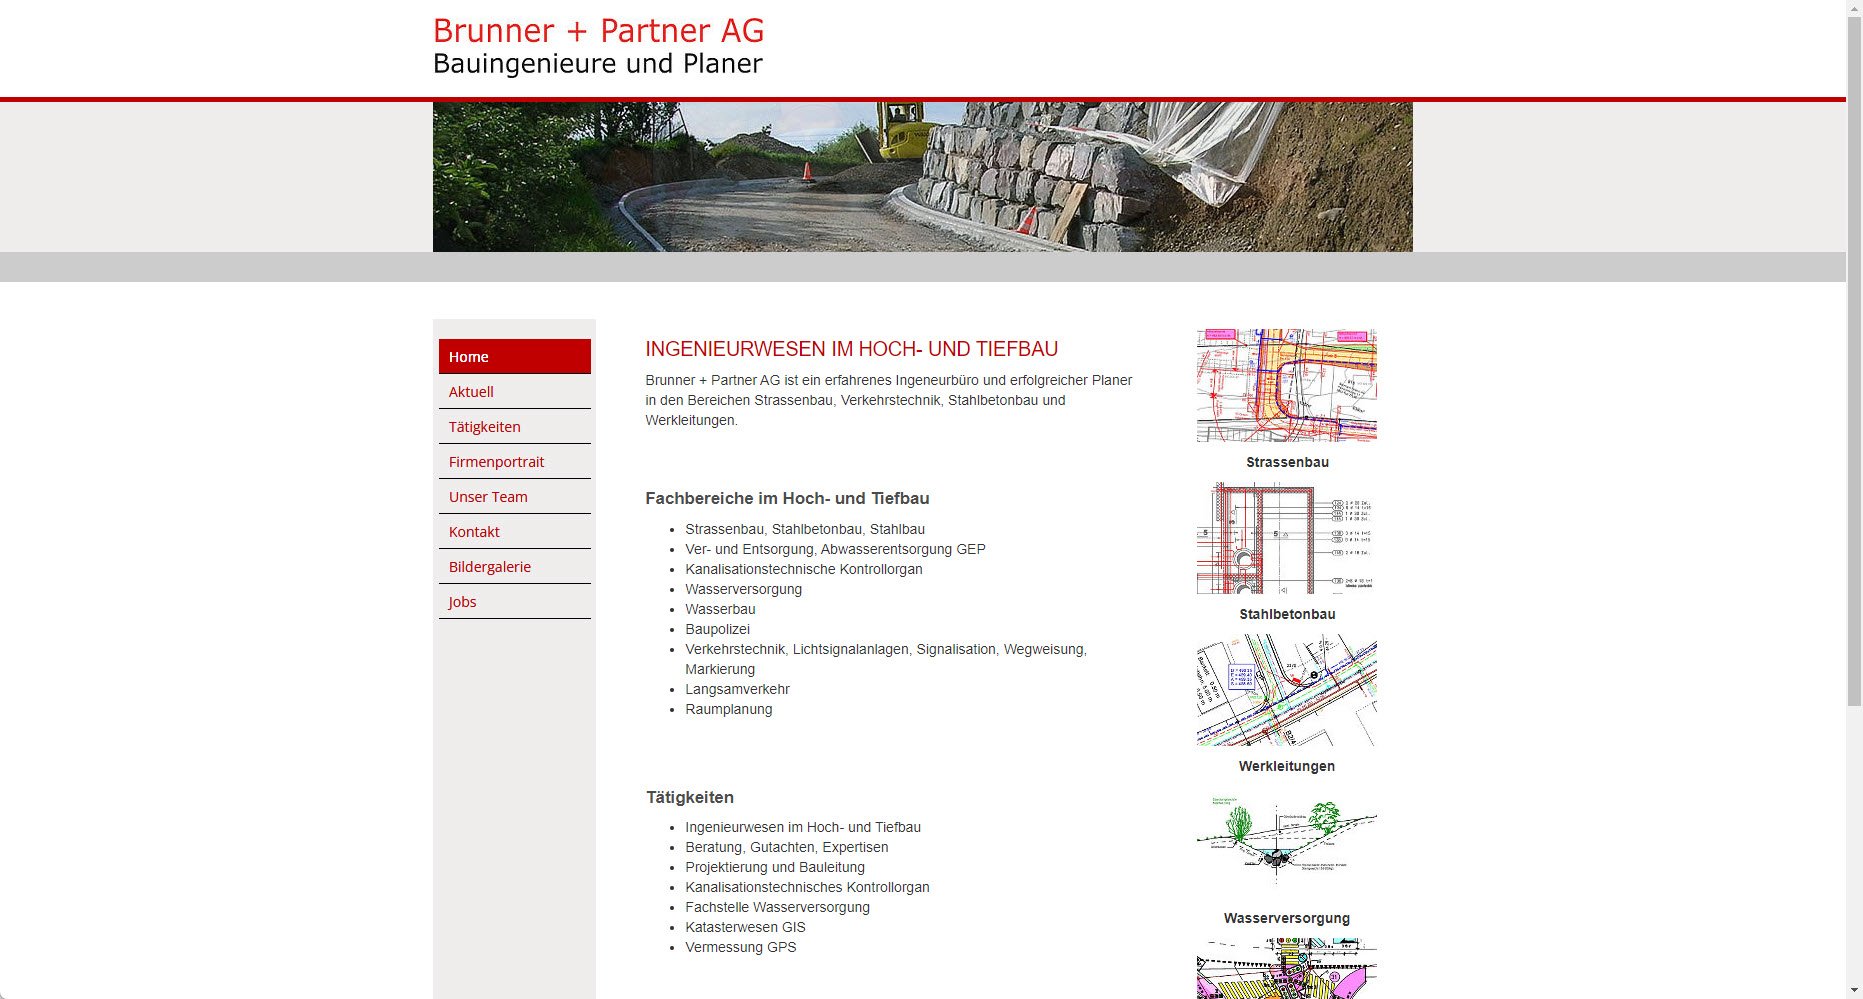 Brunner + Partner AG